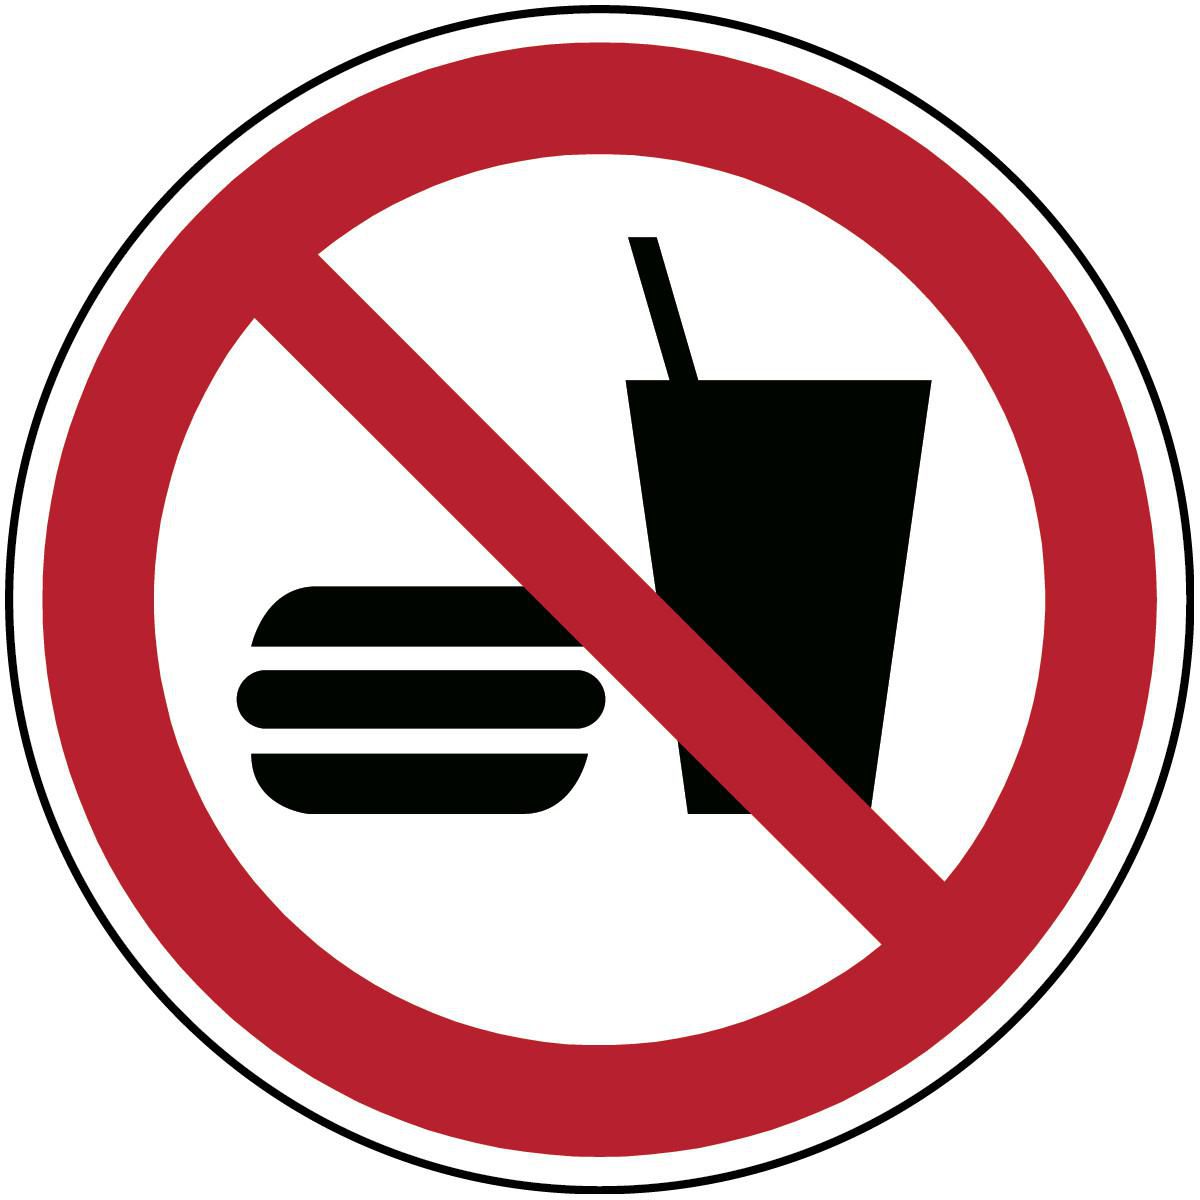 BRADY ISO-Sicherheitsschild - Essen und Trinken verboten, Rund, Schwarz/rot auf weiss, Polyester, 1S